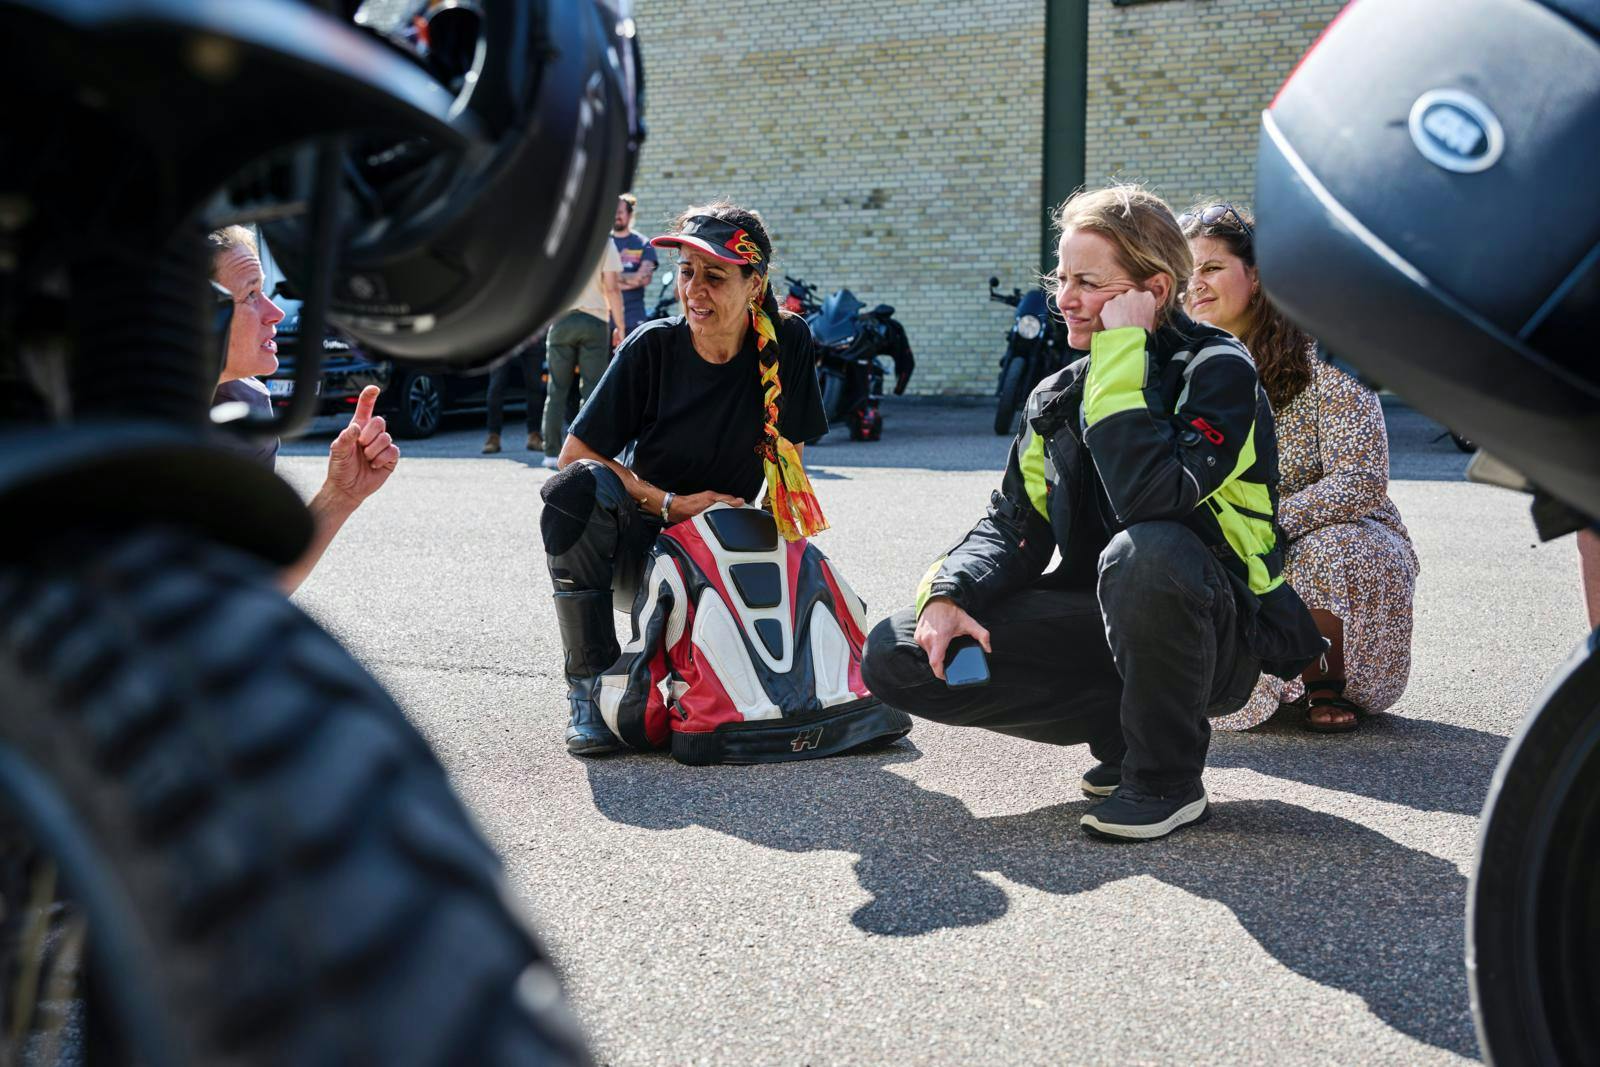 Fatma Andersen lytter opmærksomt, mens motorcykelmekaniker Pia Steen forklarer om dækpleje. 